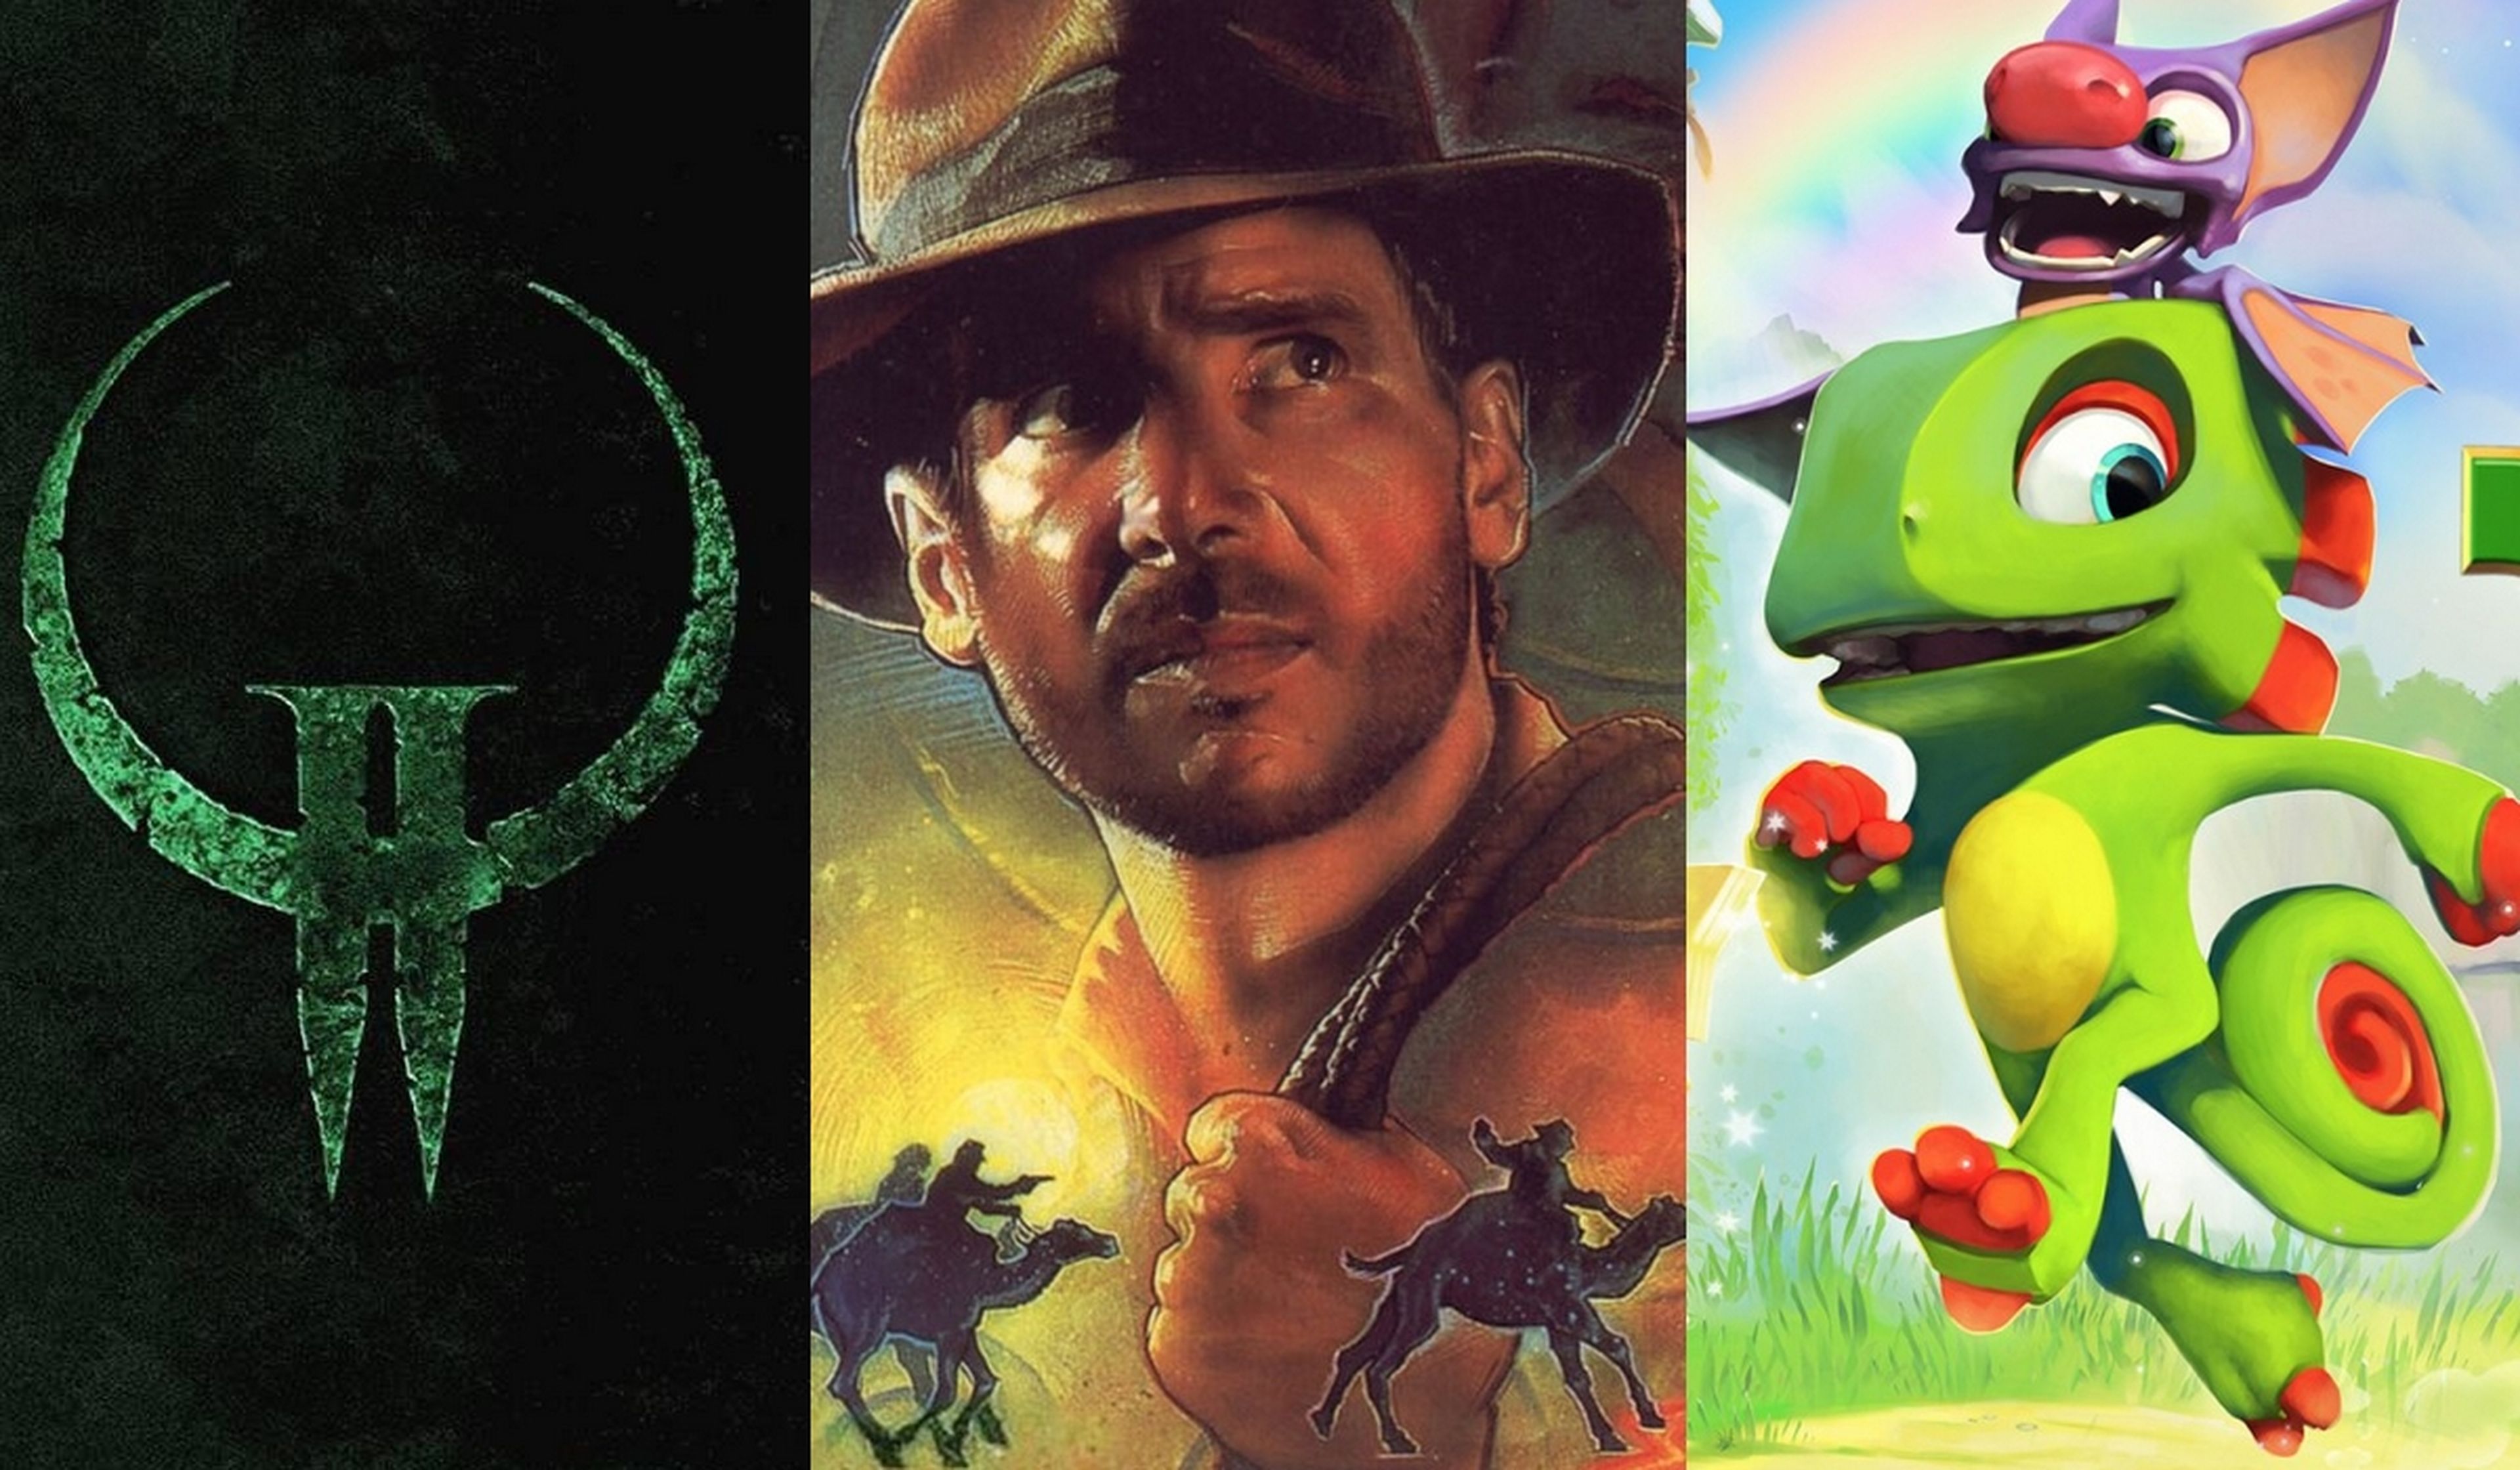 Juegos gratis de PC este fin de semana: Quake II, Indiana Jones, Yooka-Laylee y más